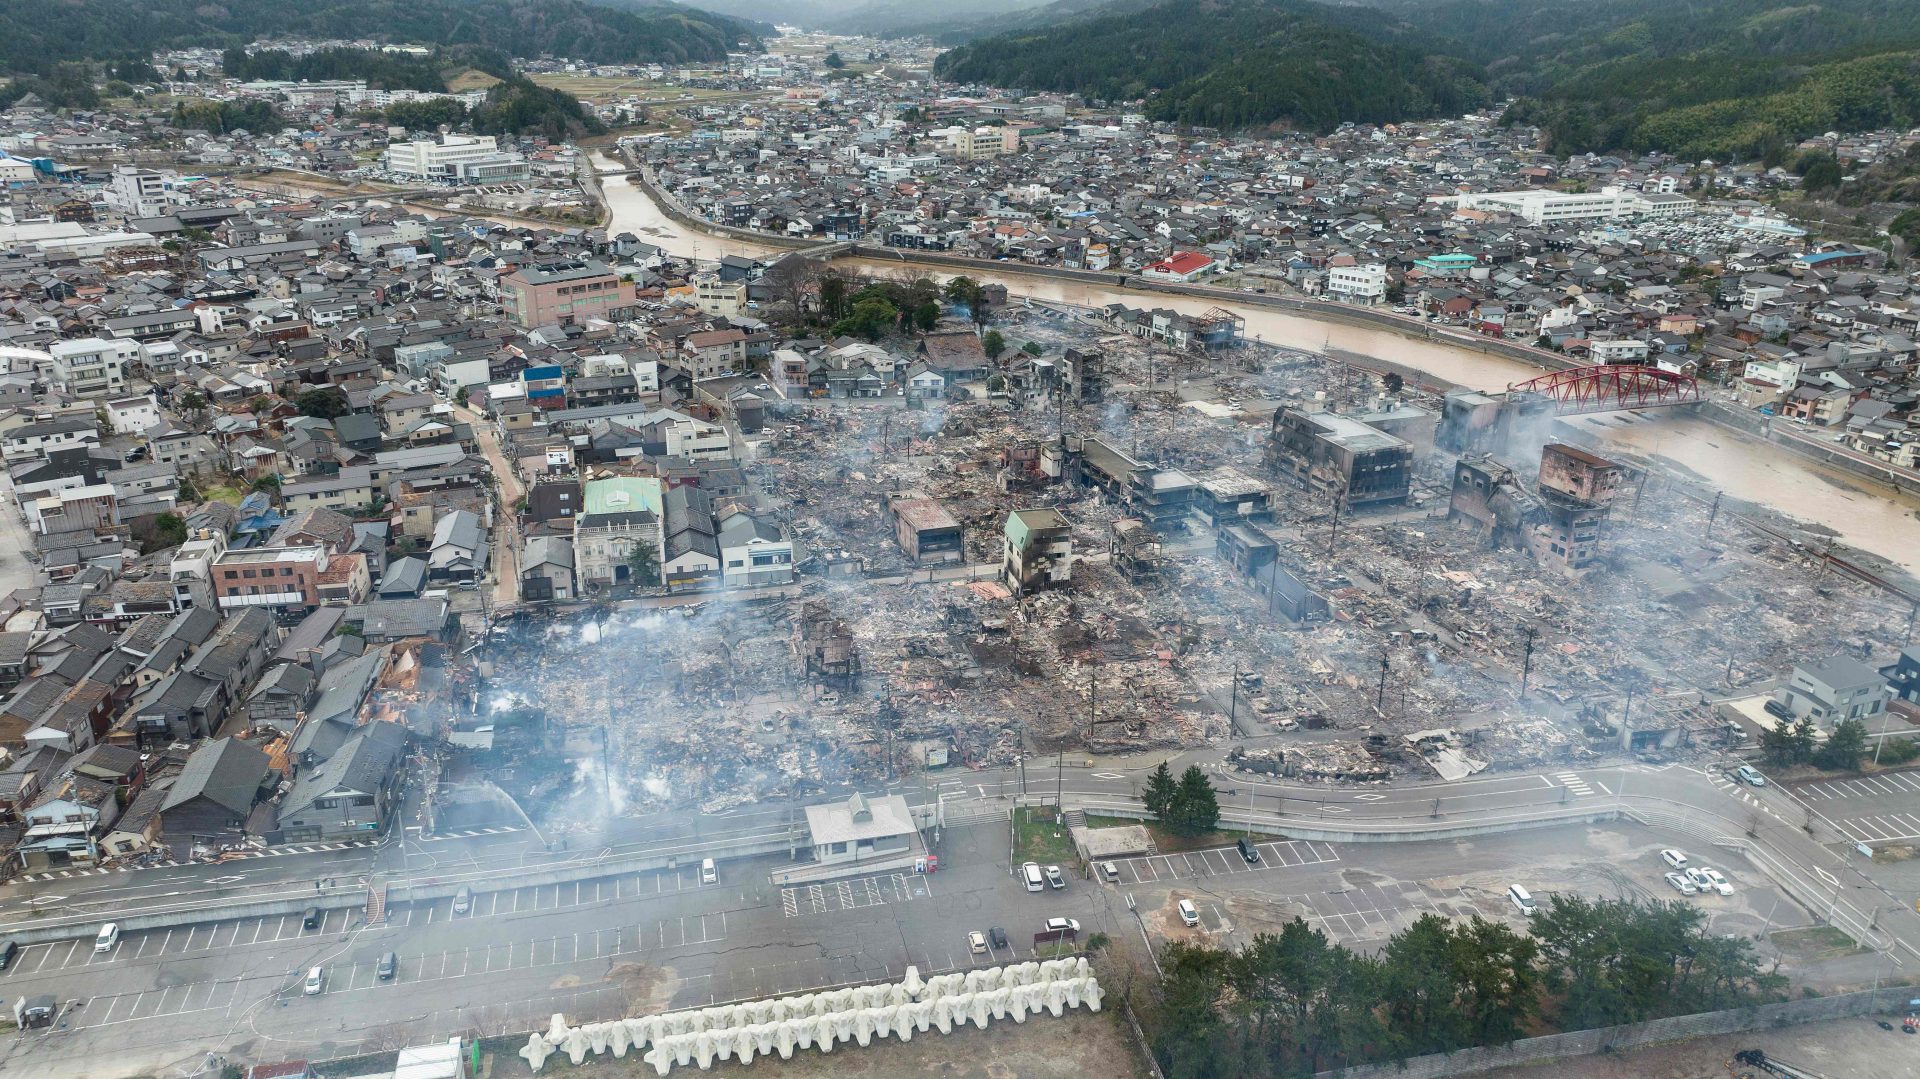 62 mortos no terramoto no Japão